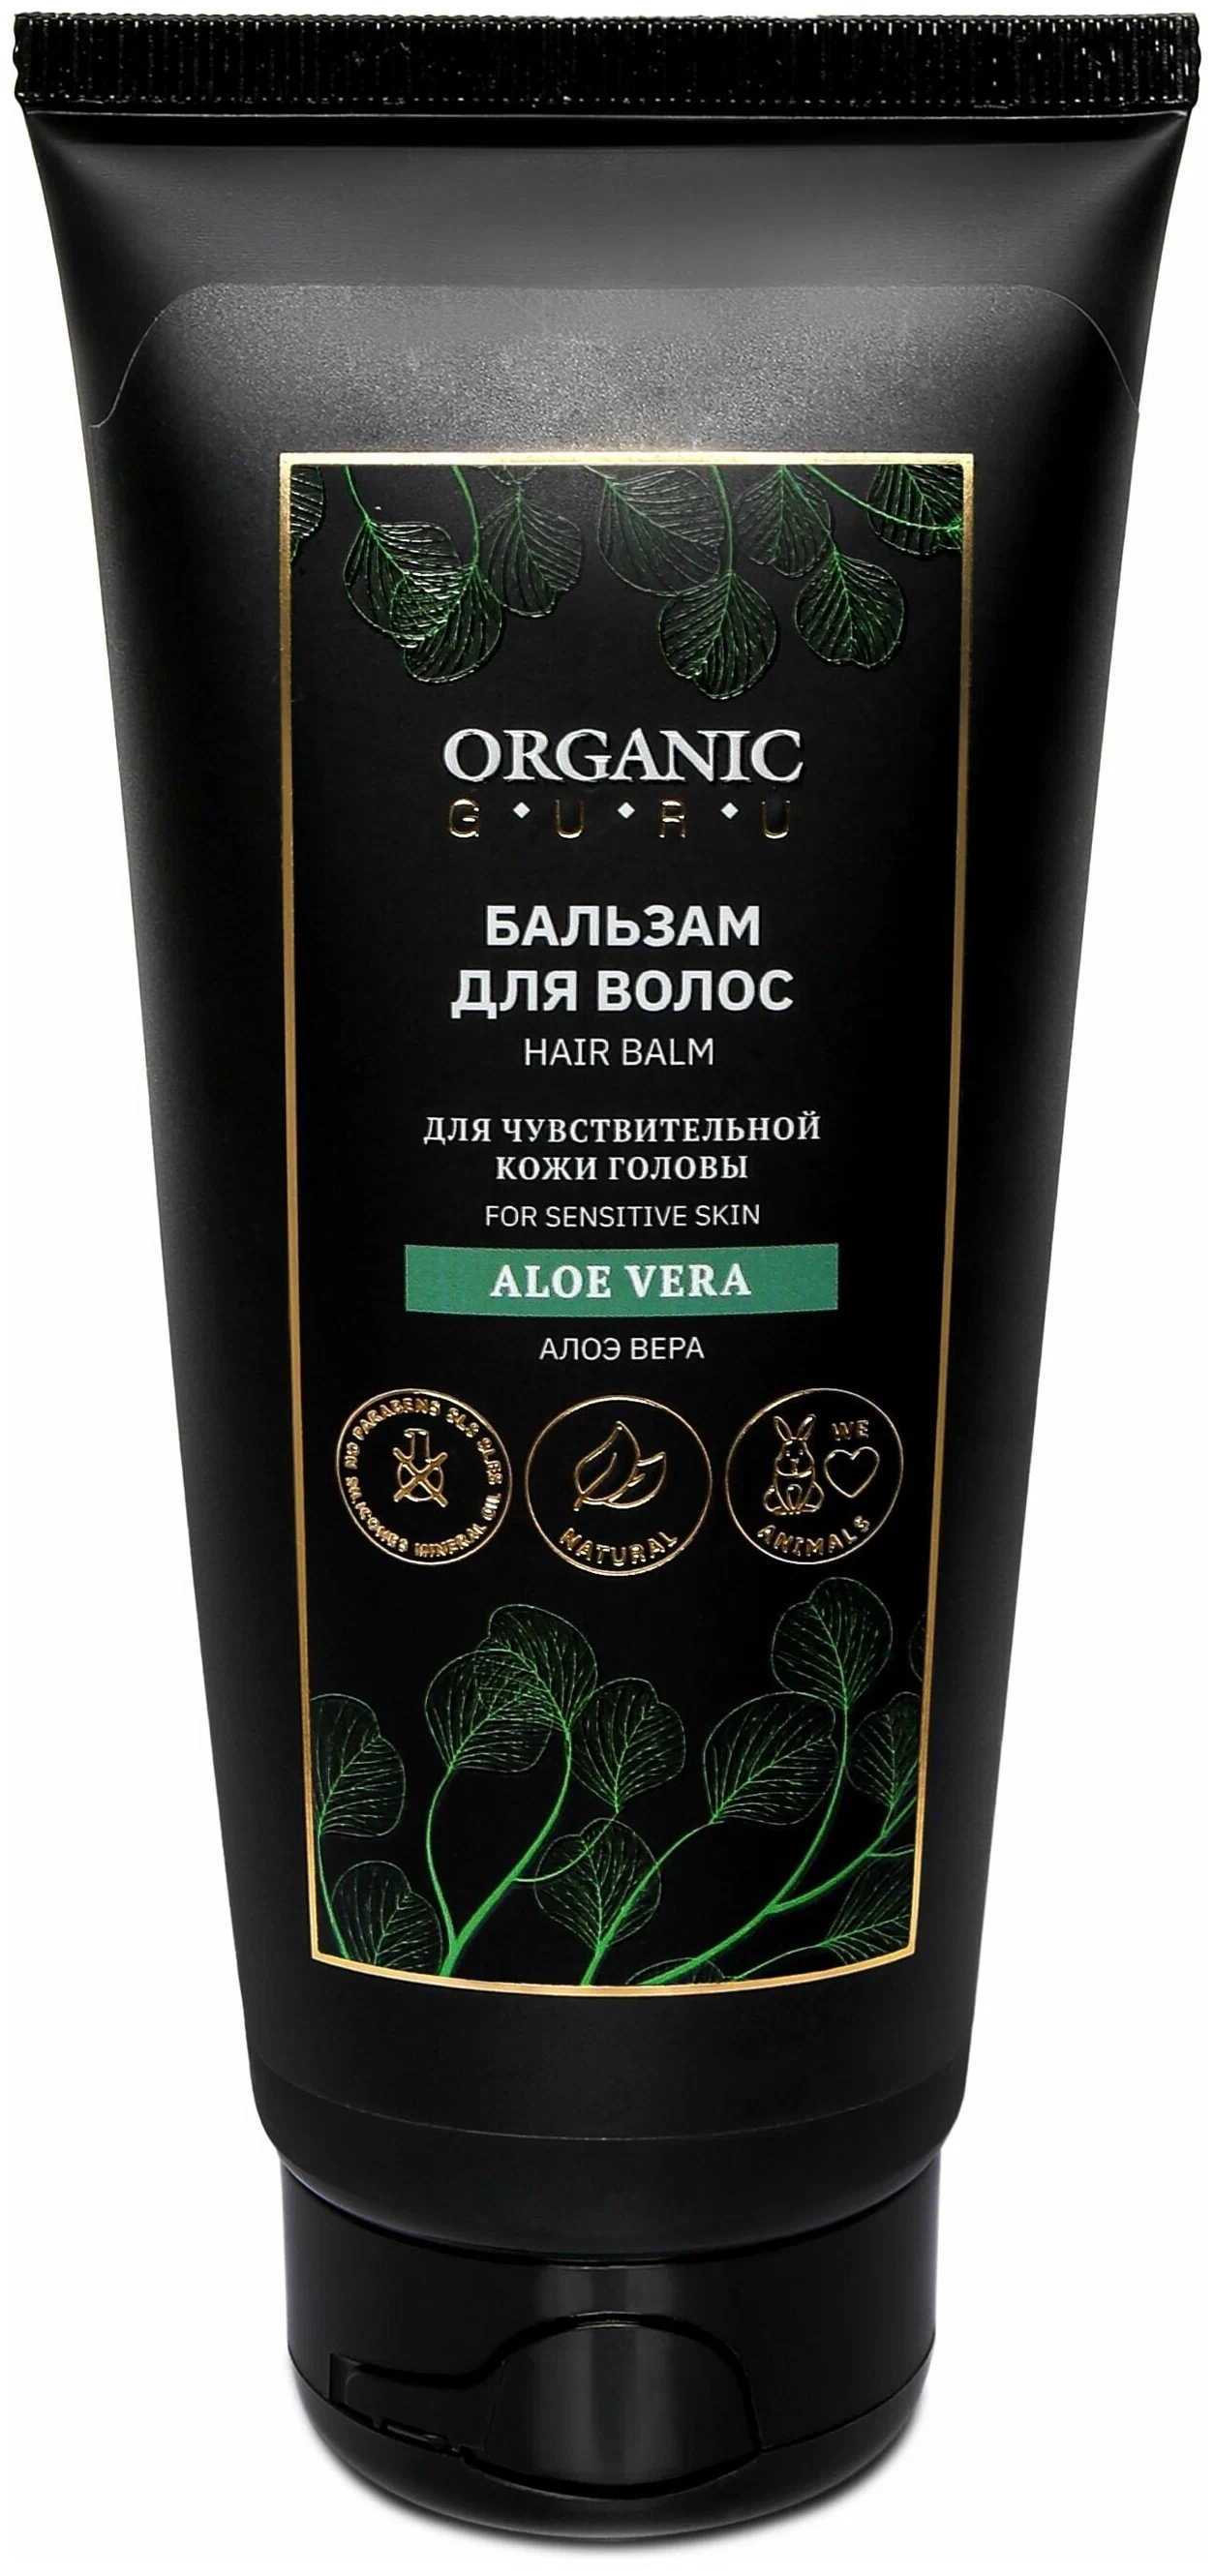 Бальзам-ополаскиватель для волос Organic Guru Aloe Vera для чувствительной кожи, 200 мл gehwol balm normal skin тонизирующий бальзам жожоба для нормальной кожи 75 мл